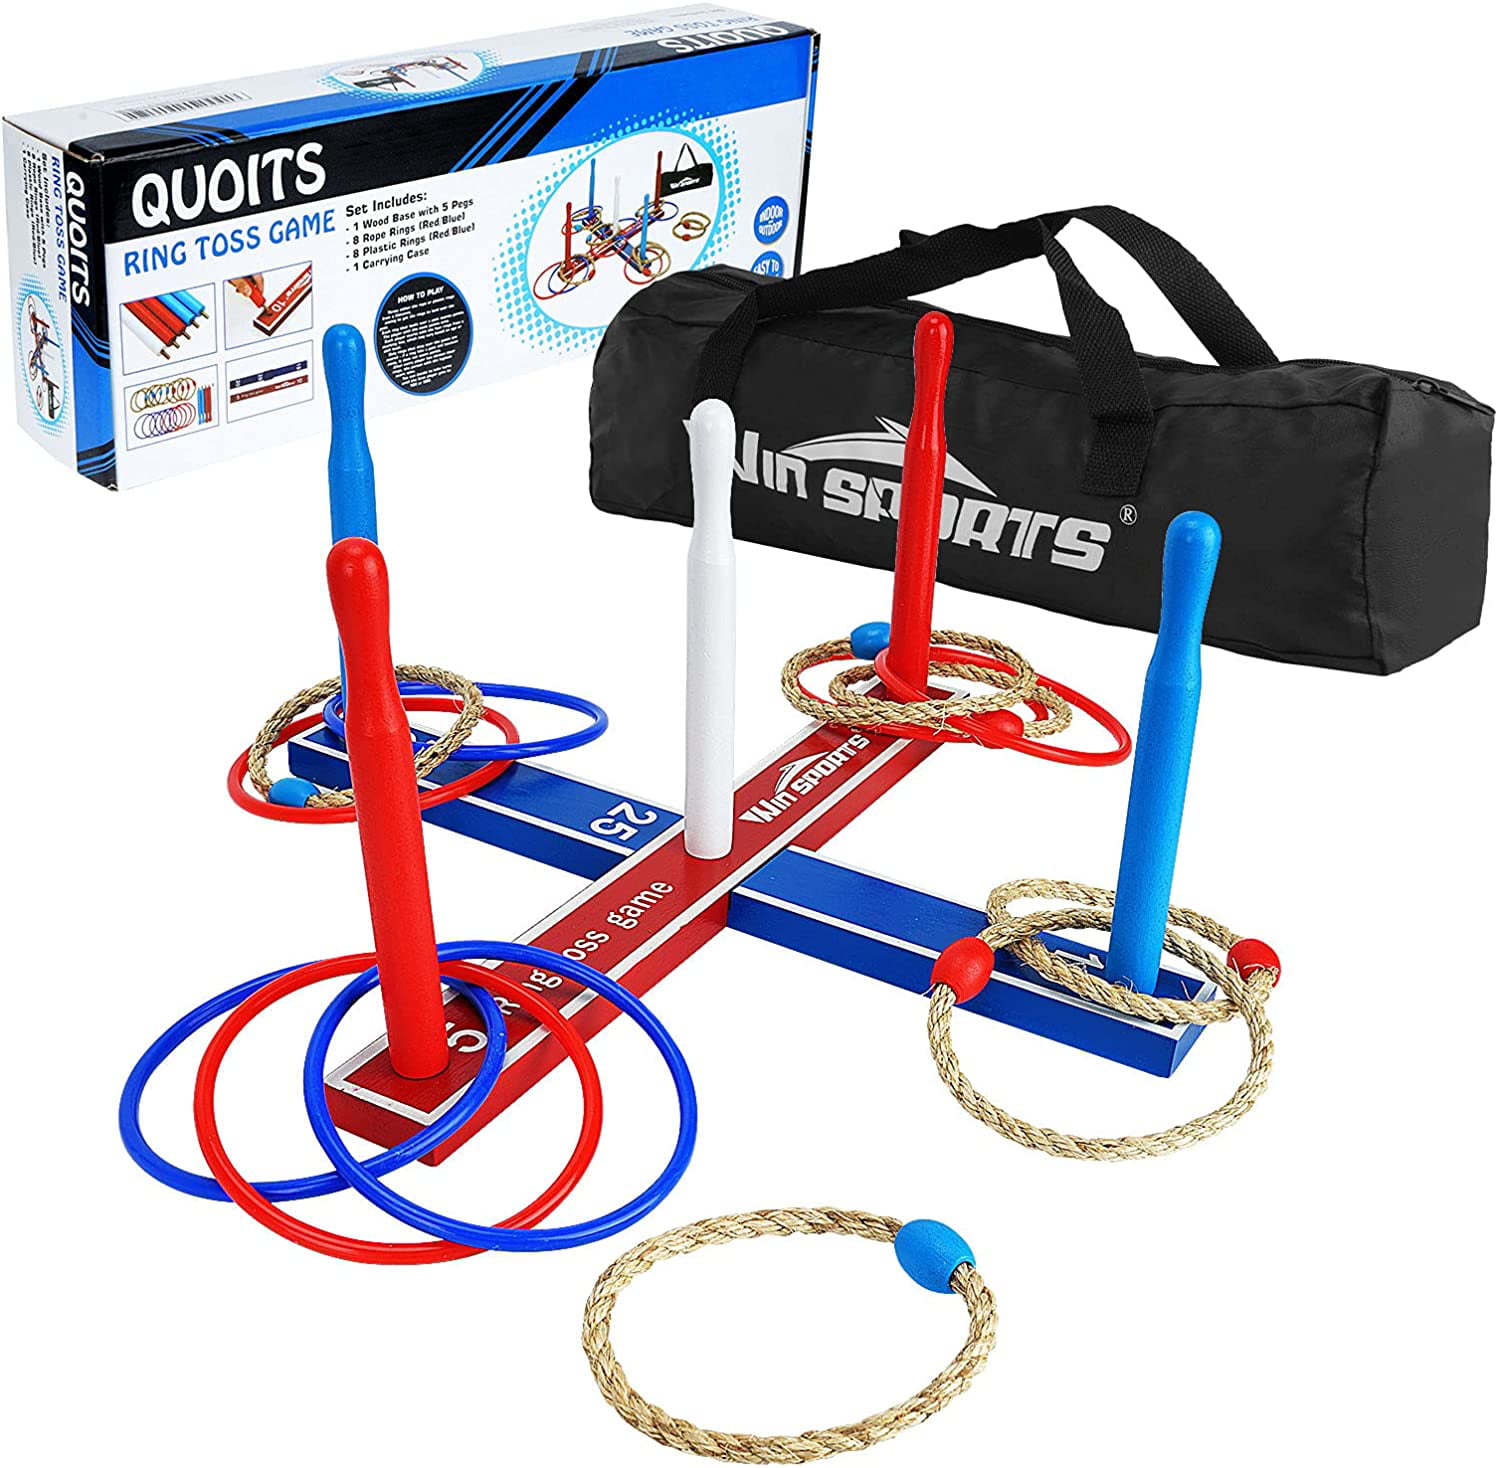 10 Plastic Rings & Carrying Bag Loop Hoop Ring Toss Game Set with 5 Rope Rings 